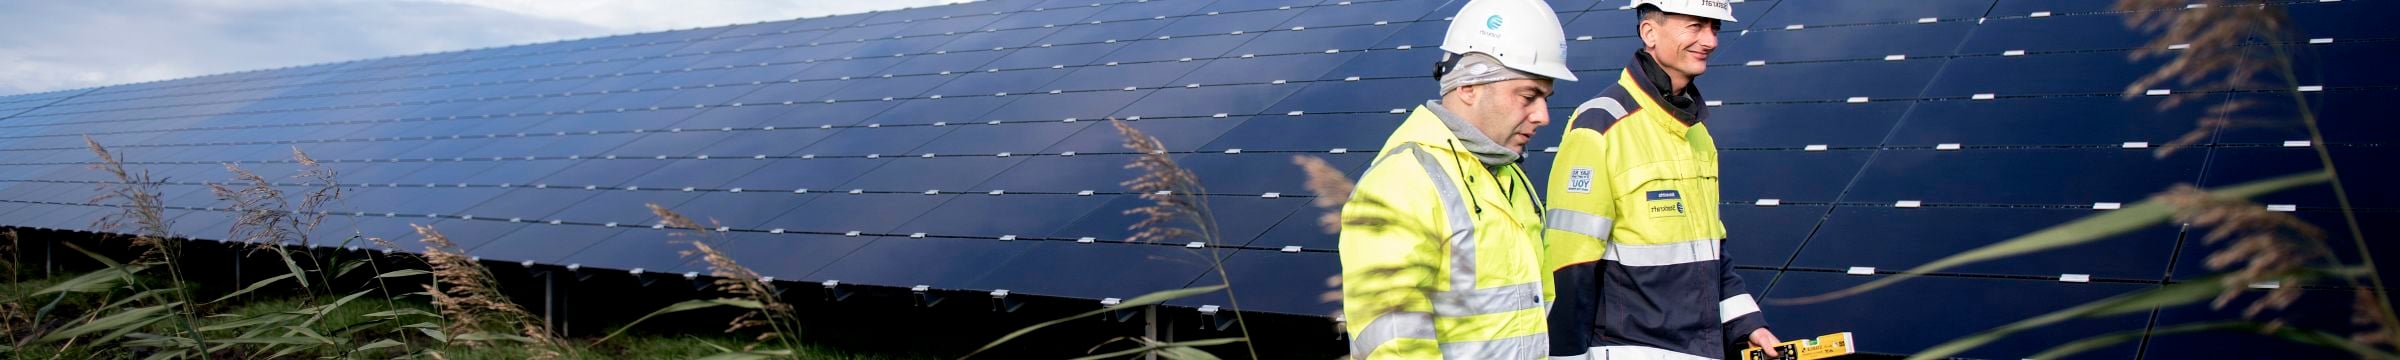 Zwei Mitarbeiter laufen im Solarpark Lange Runde herum